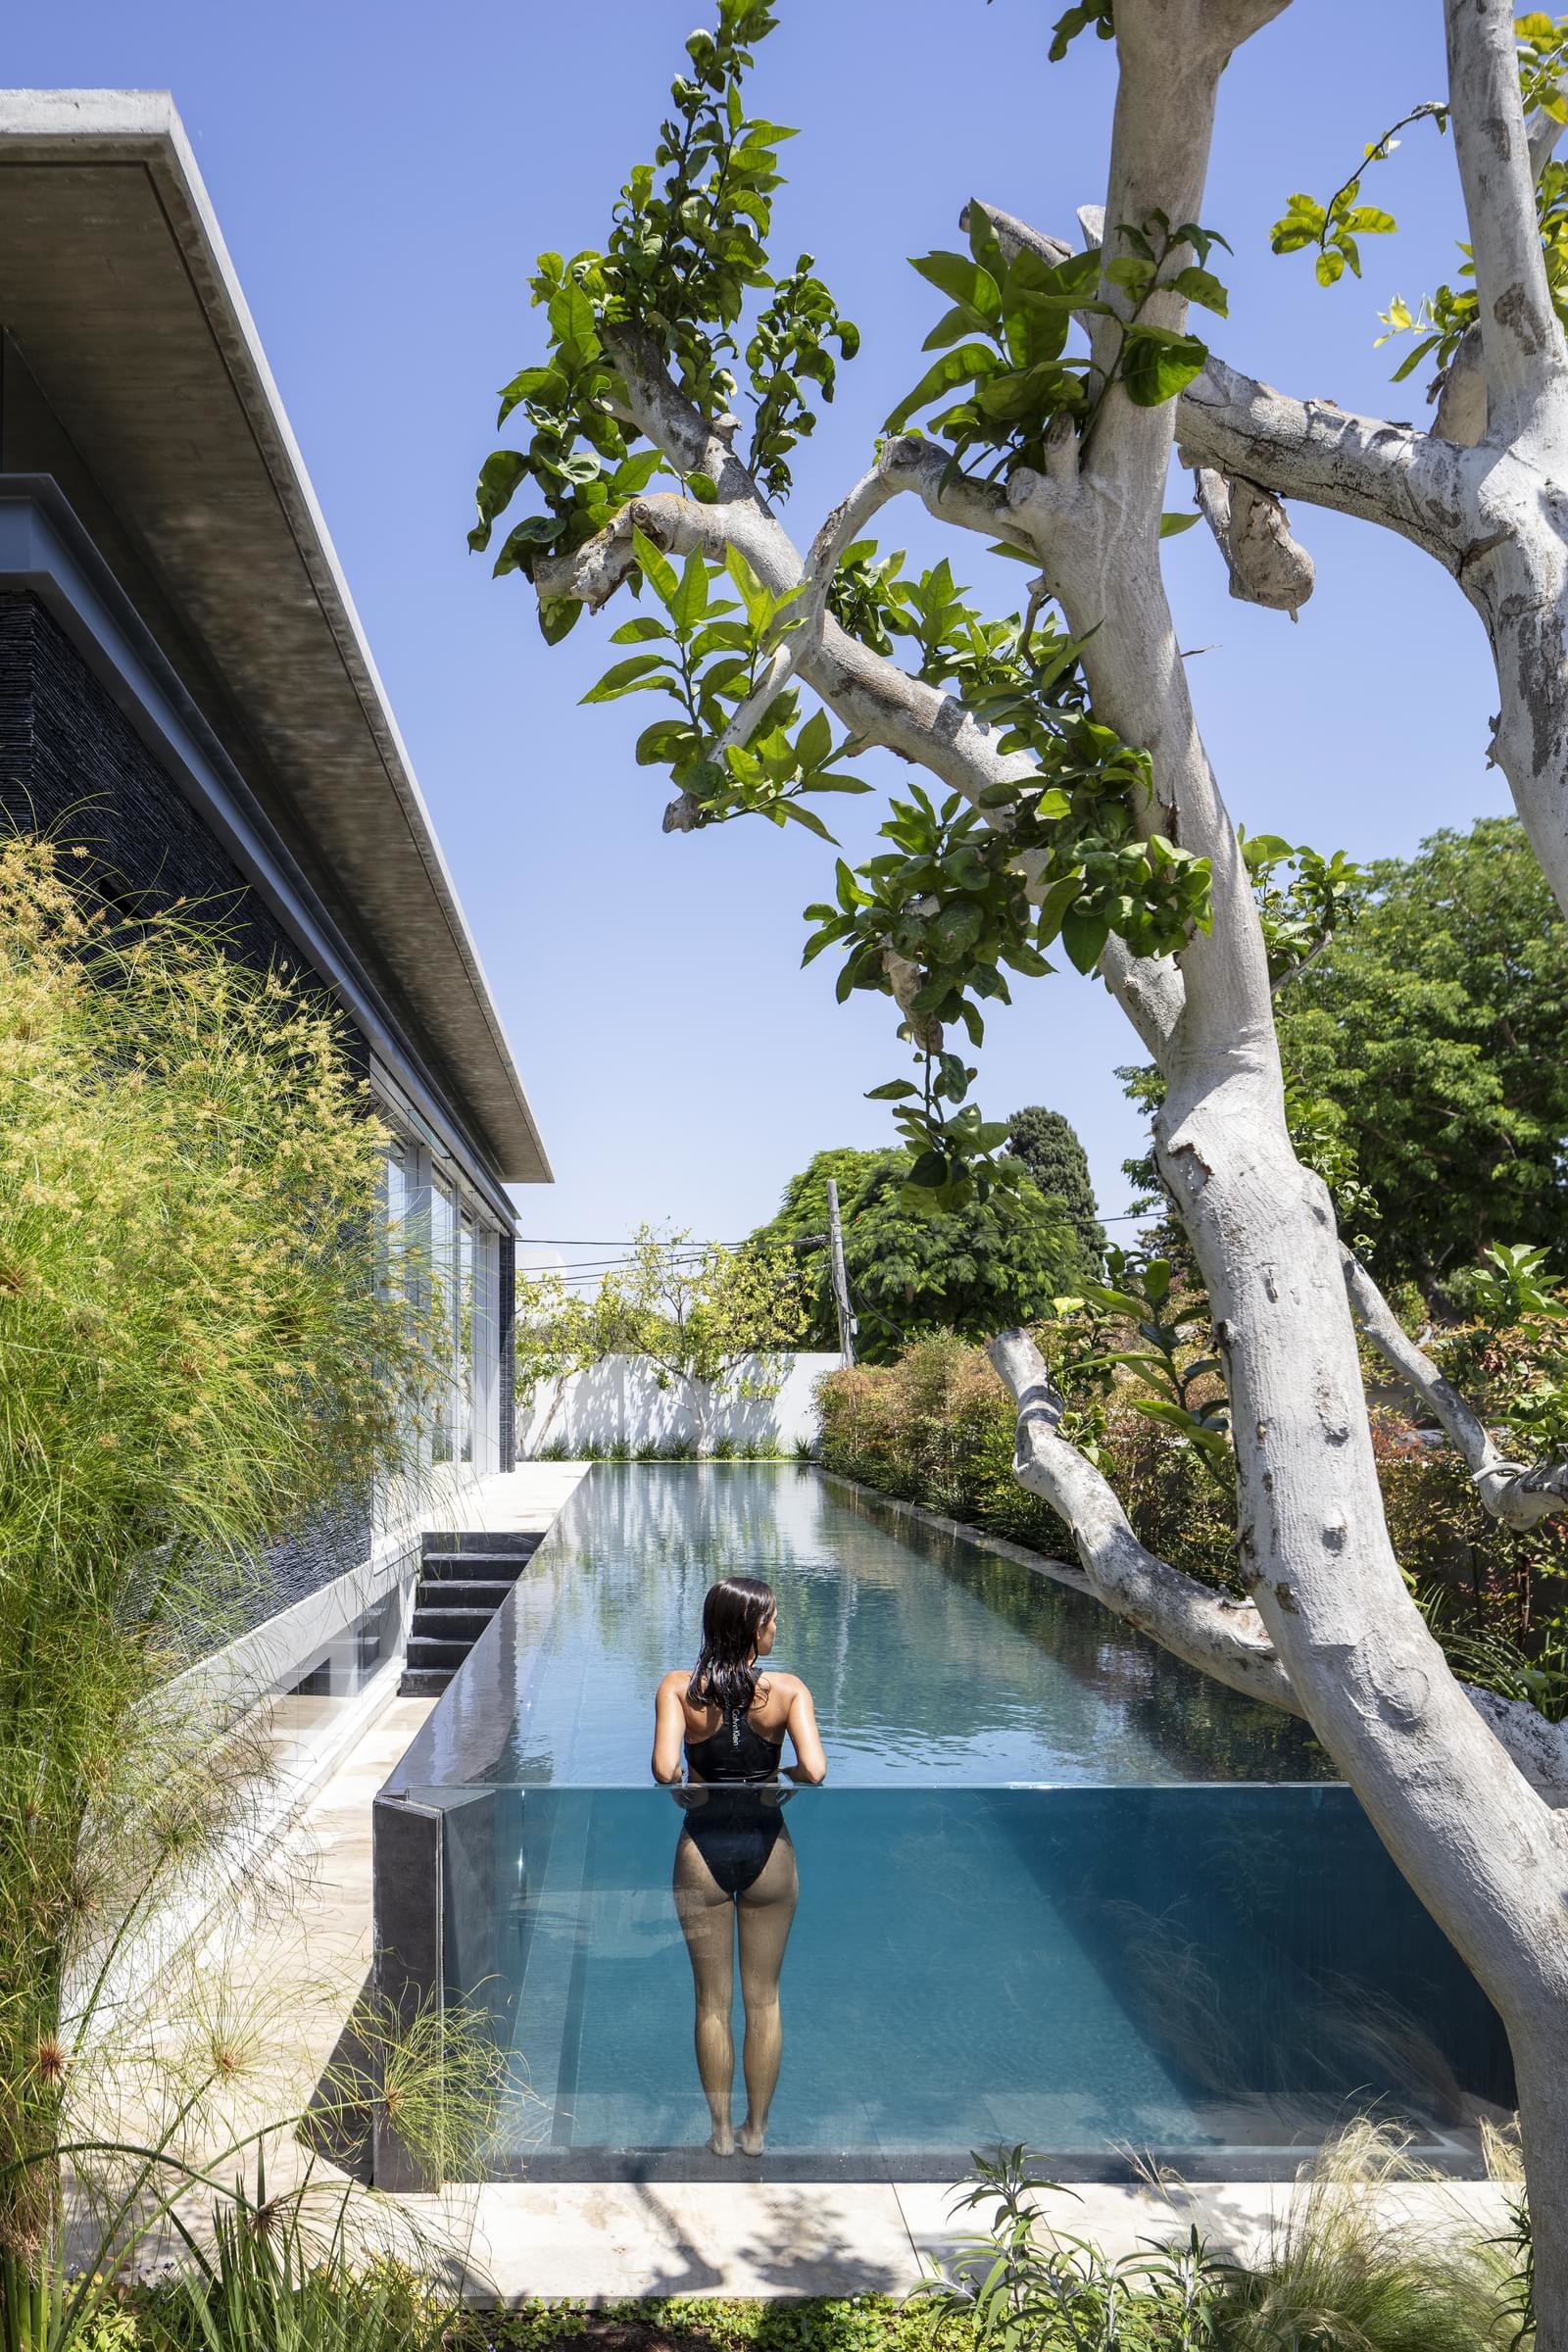  Tel Aviv House by Pitsou Kedem Architects